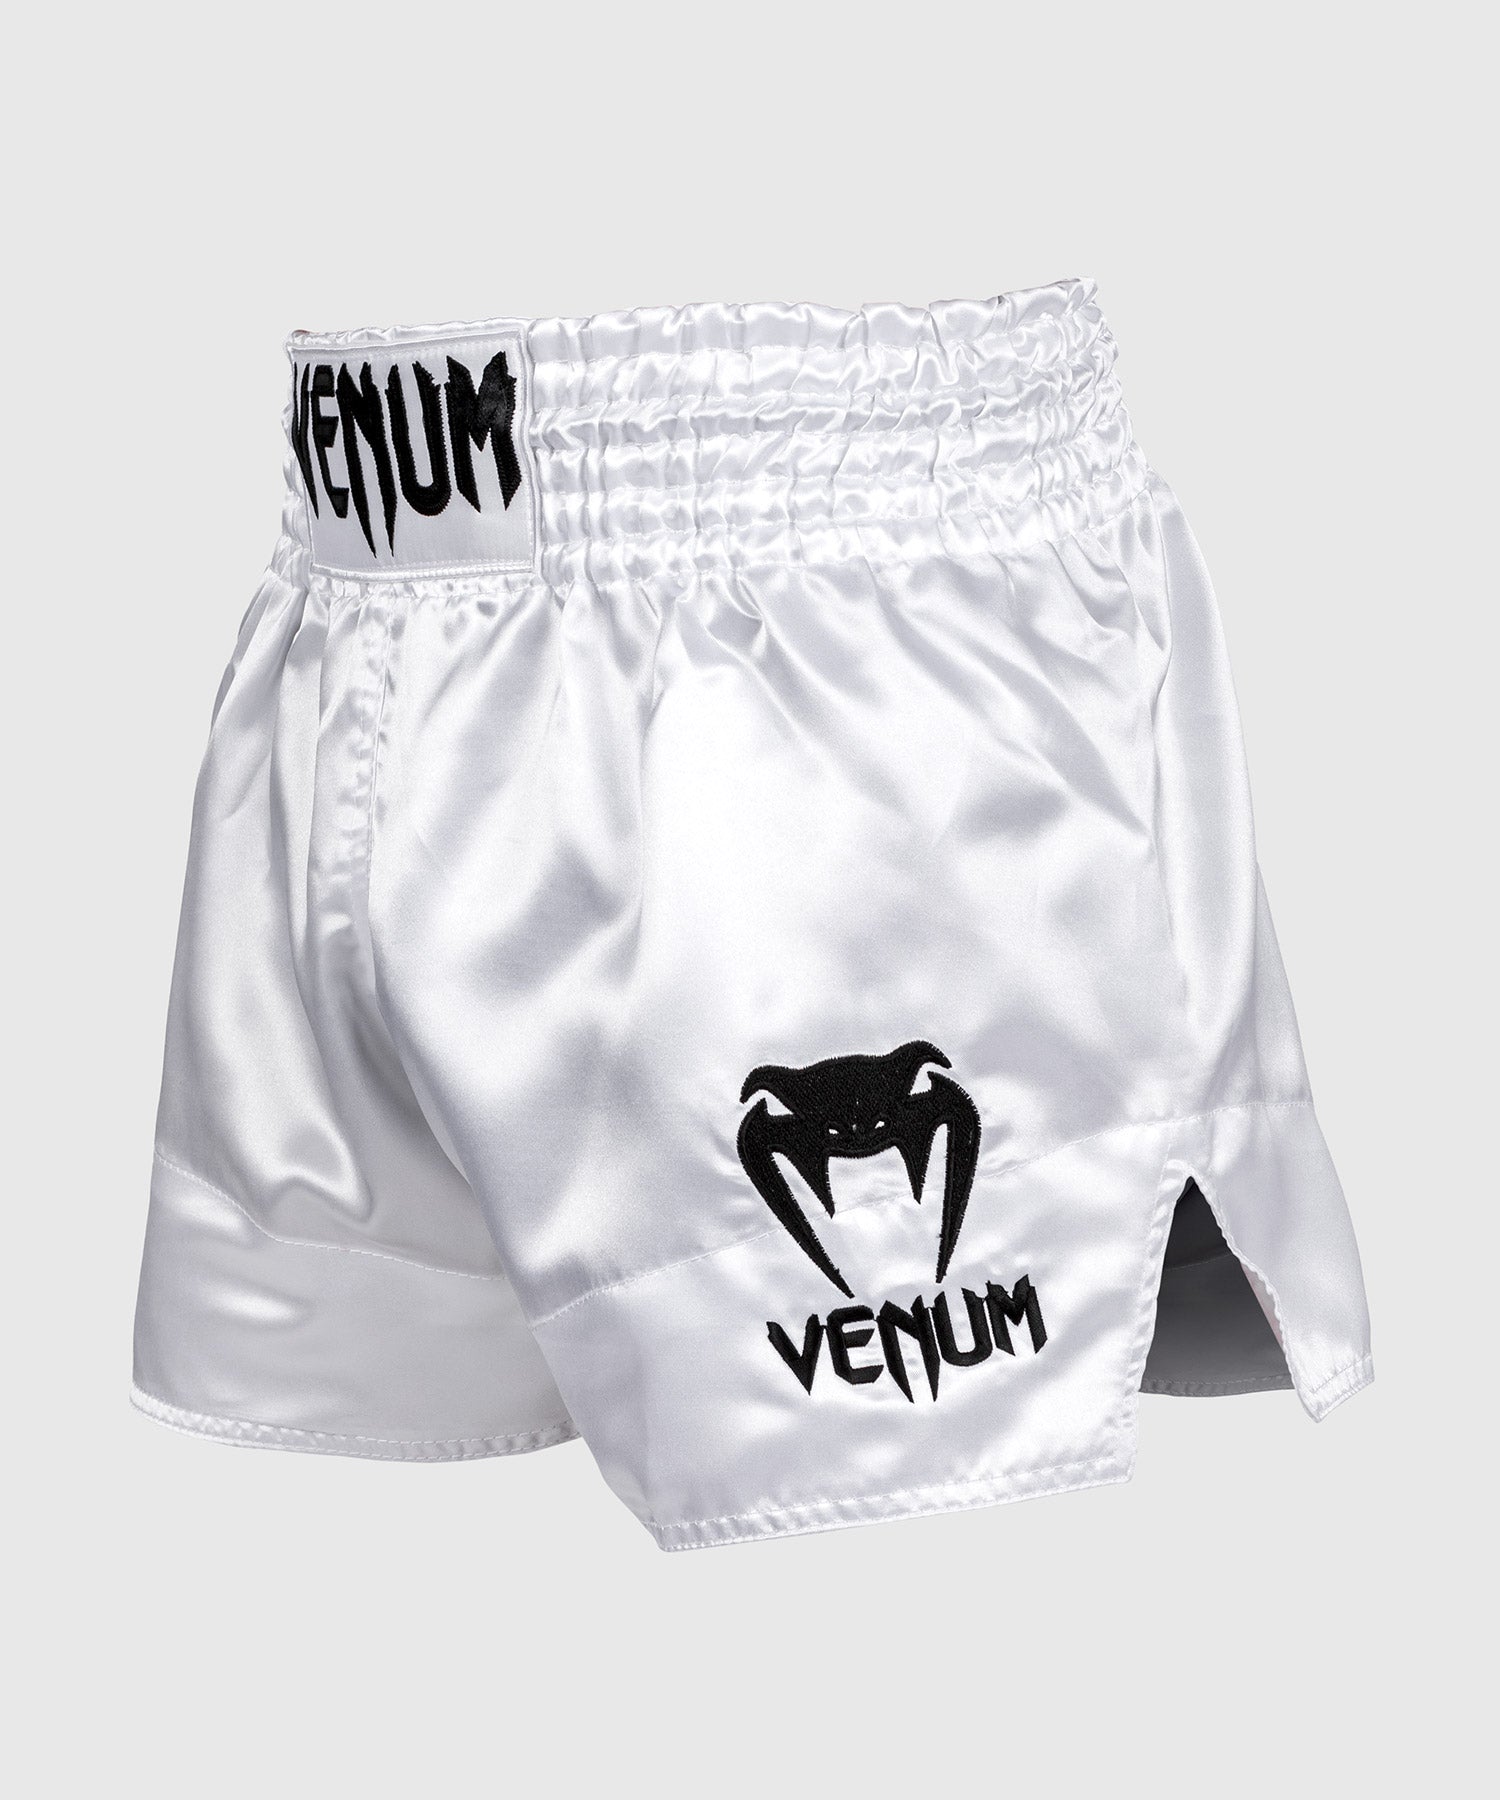 Short muay thai Venum blanc et or - short de boxe